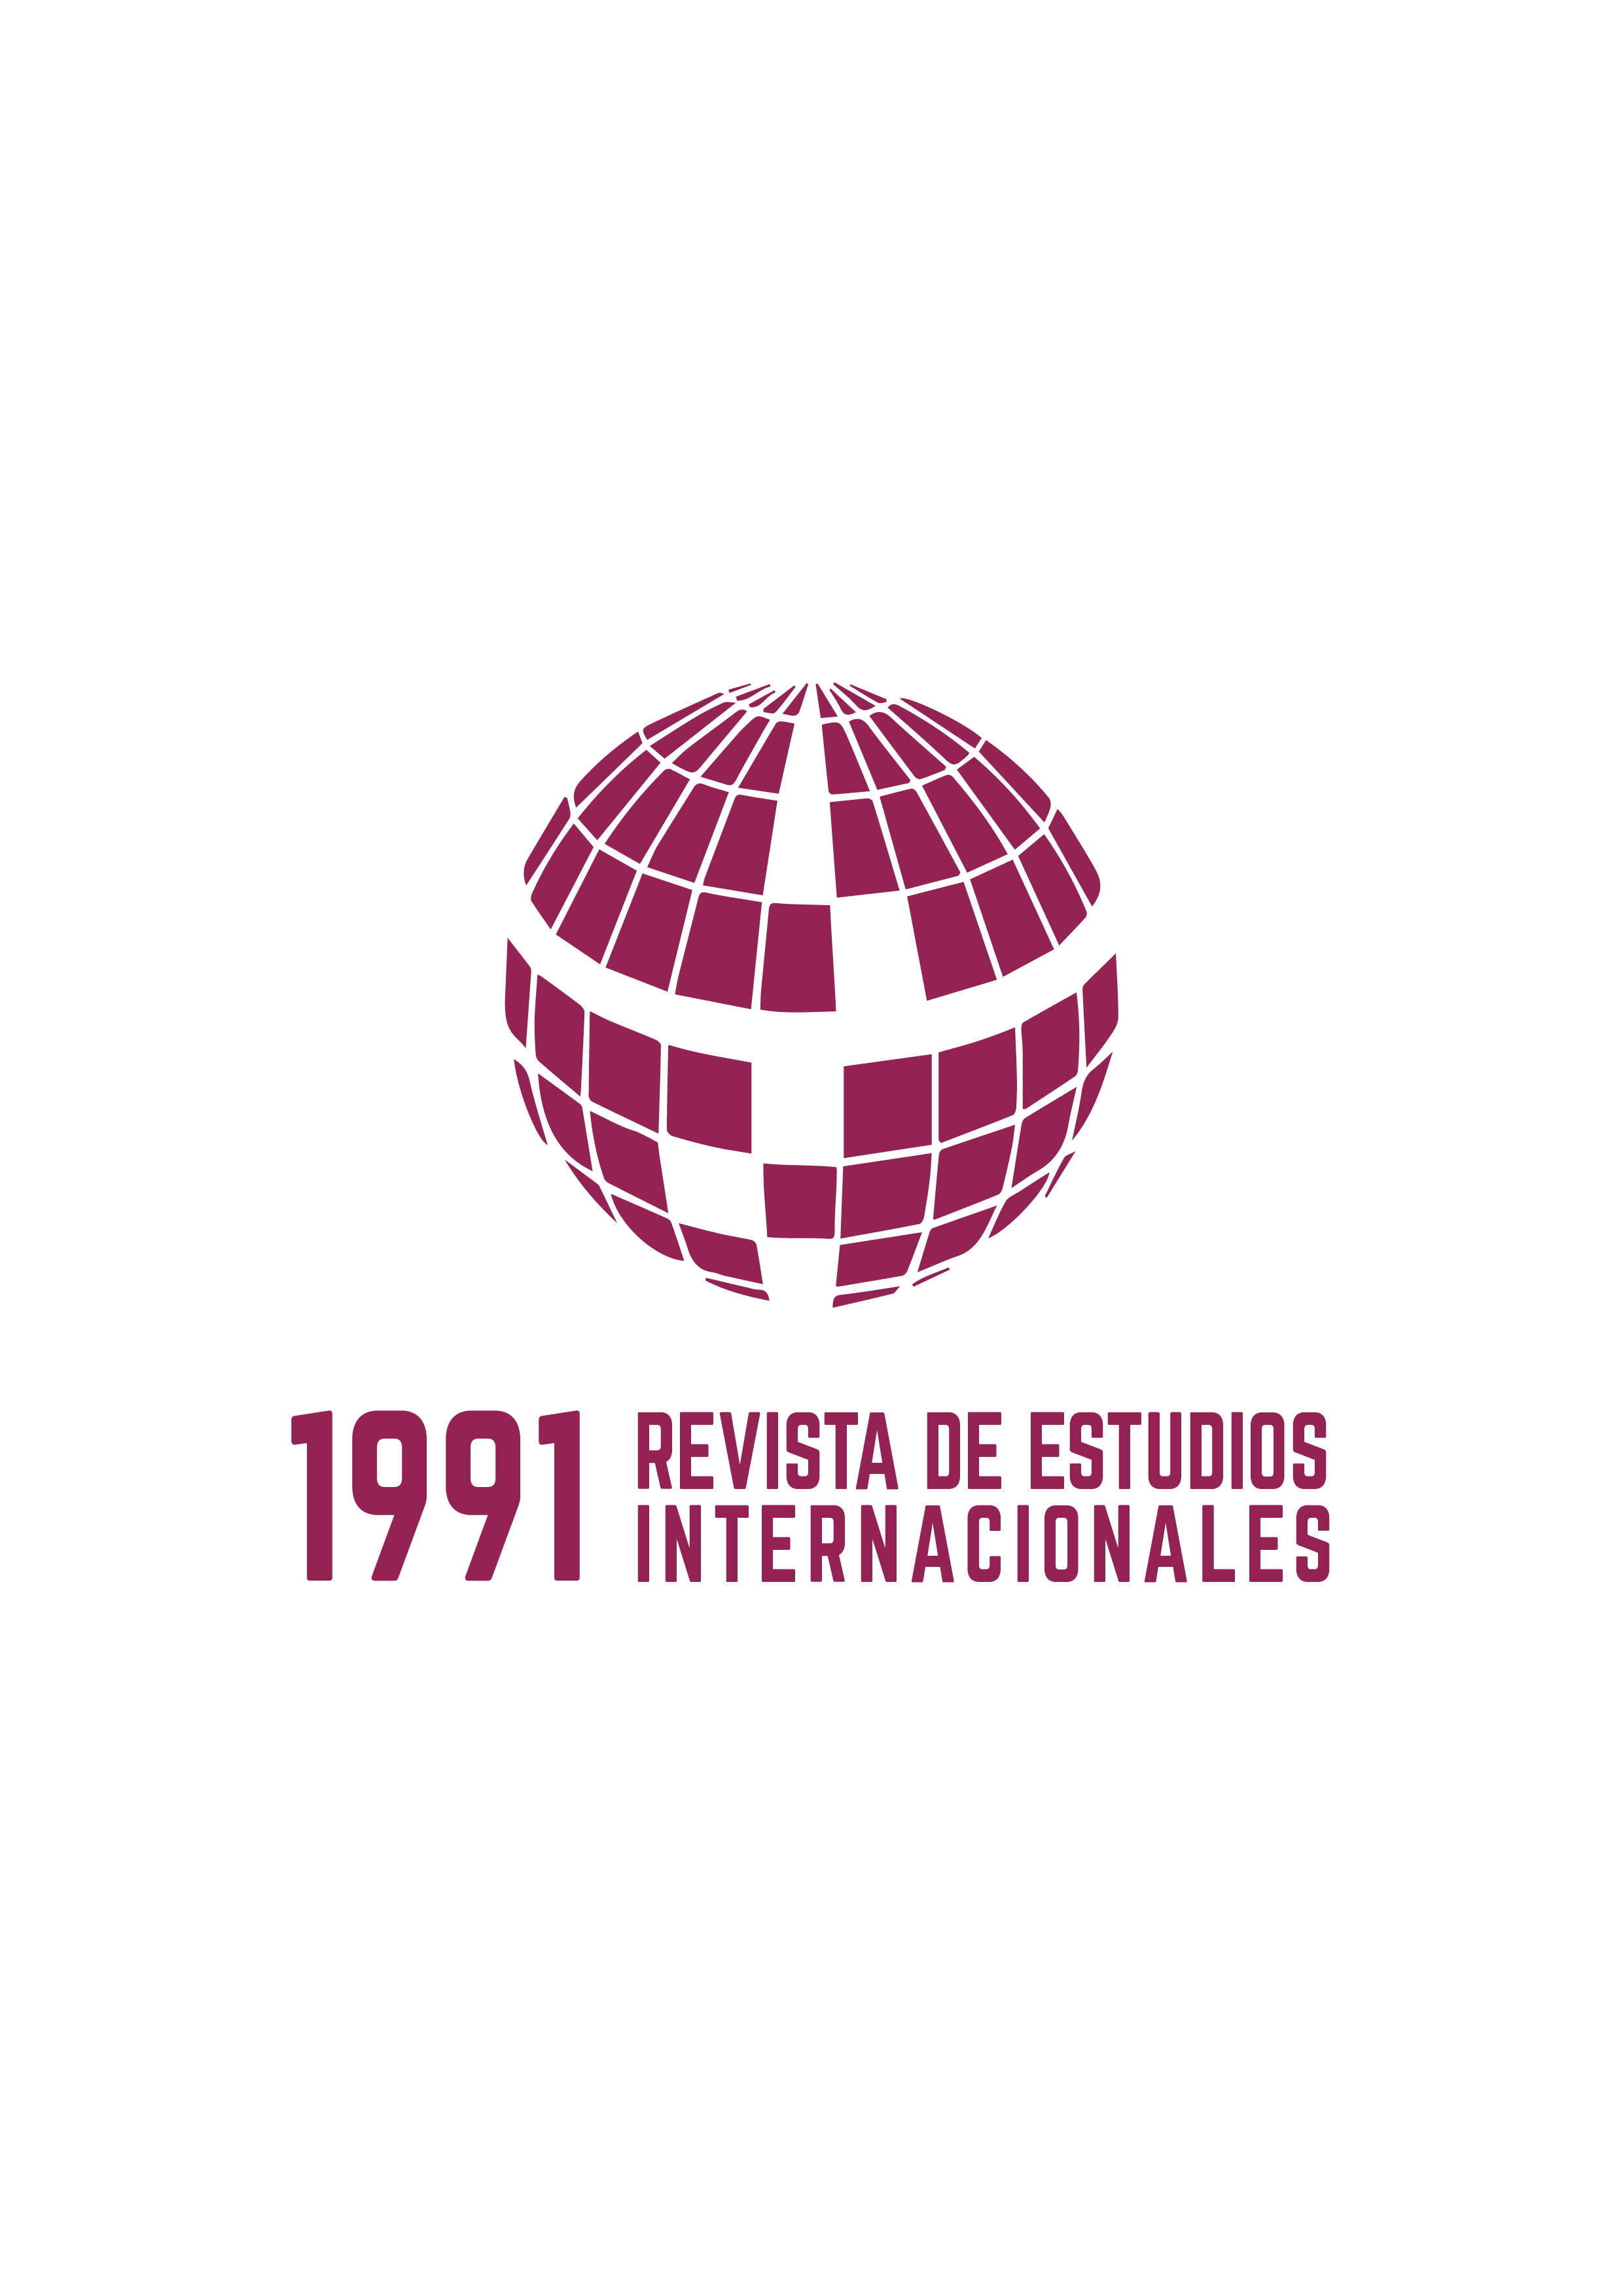 Logo de 1991. Revista de Estudios Internacionales: a la izquierda un ícono de un mundo y a la derecha el nombre de la revista.